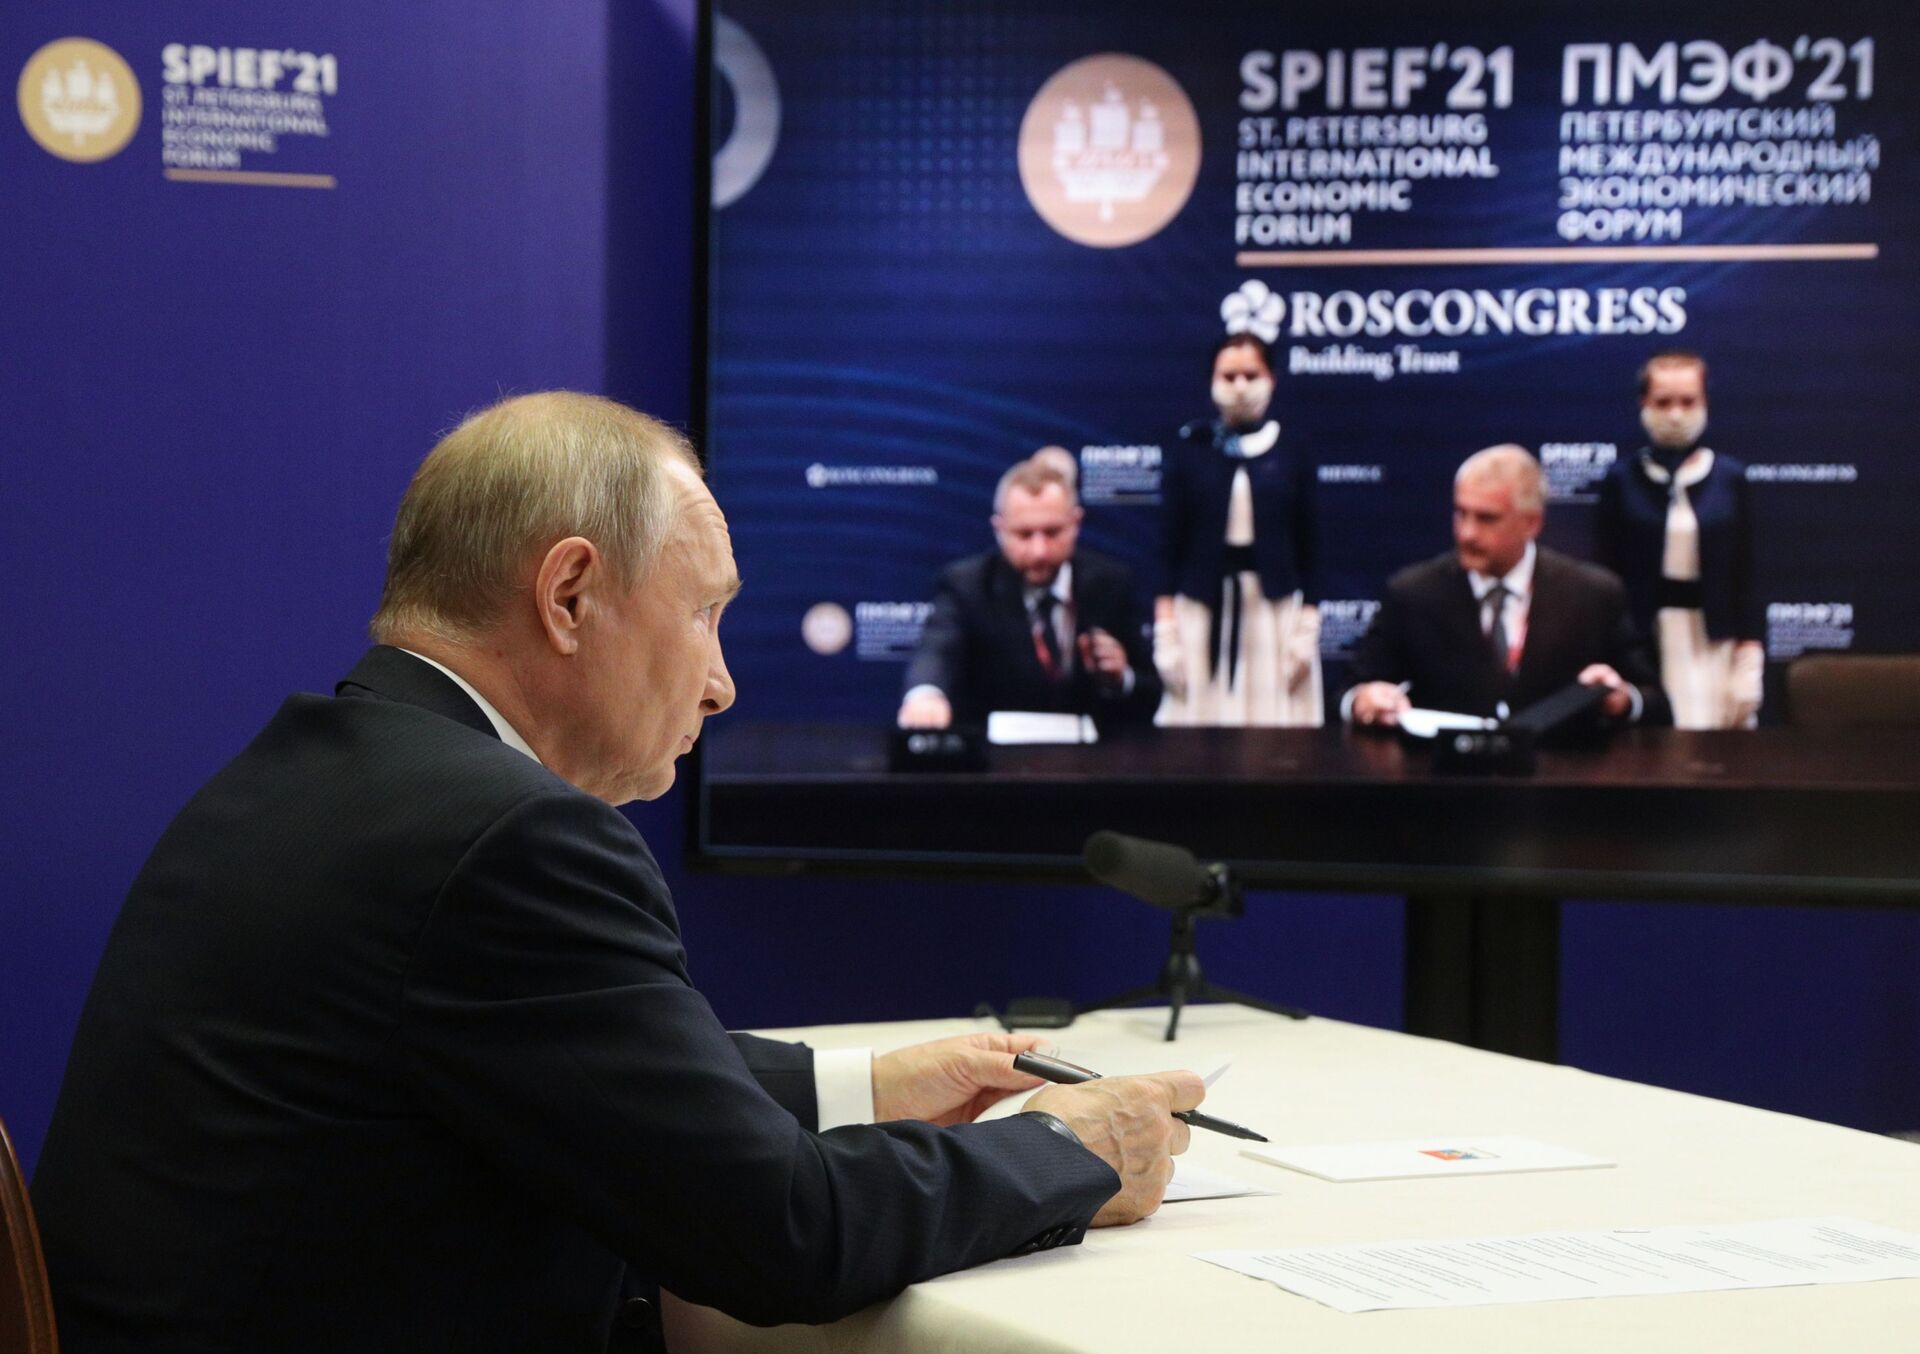 Russia Putin SPIEFRusya Devlet Başkanı Vladimir Putin’in video bağlantısı aracılığıyla katıldığı imza töreni, St. Petersburg Uluslararası Ekonomik Forumu'nda (SPIEF) gerçekleşti. - Sputnik Türkiye, 1920, 10.08.2021